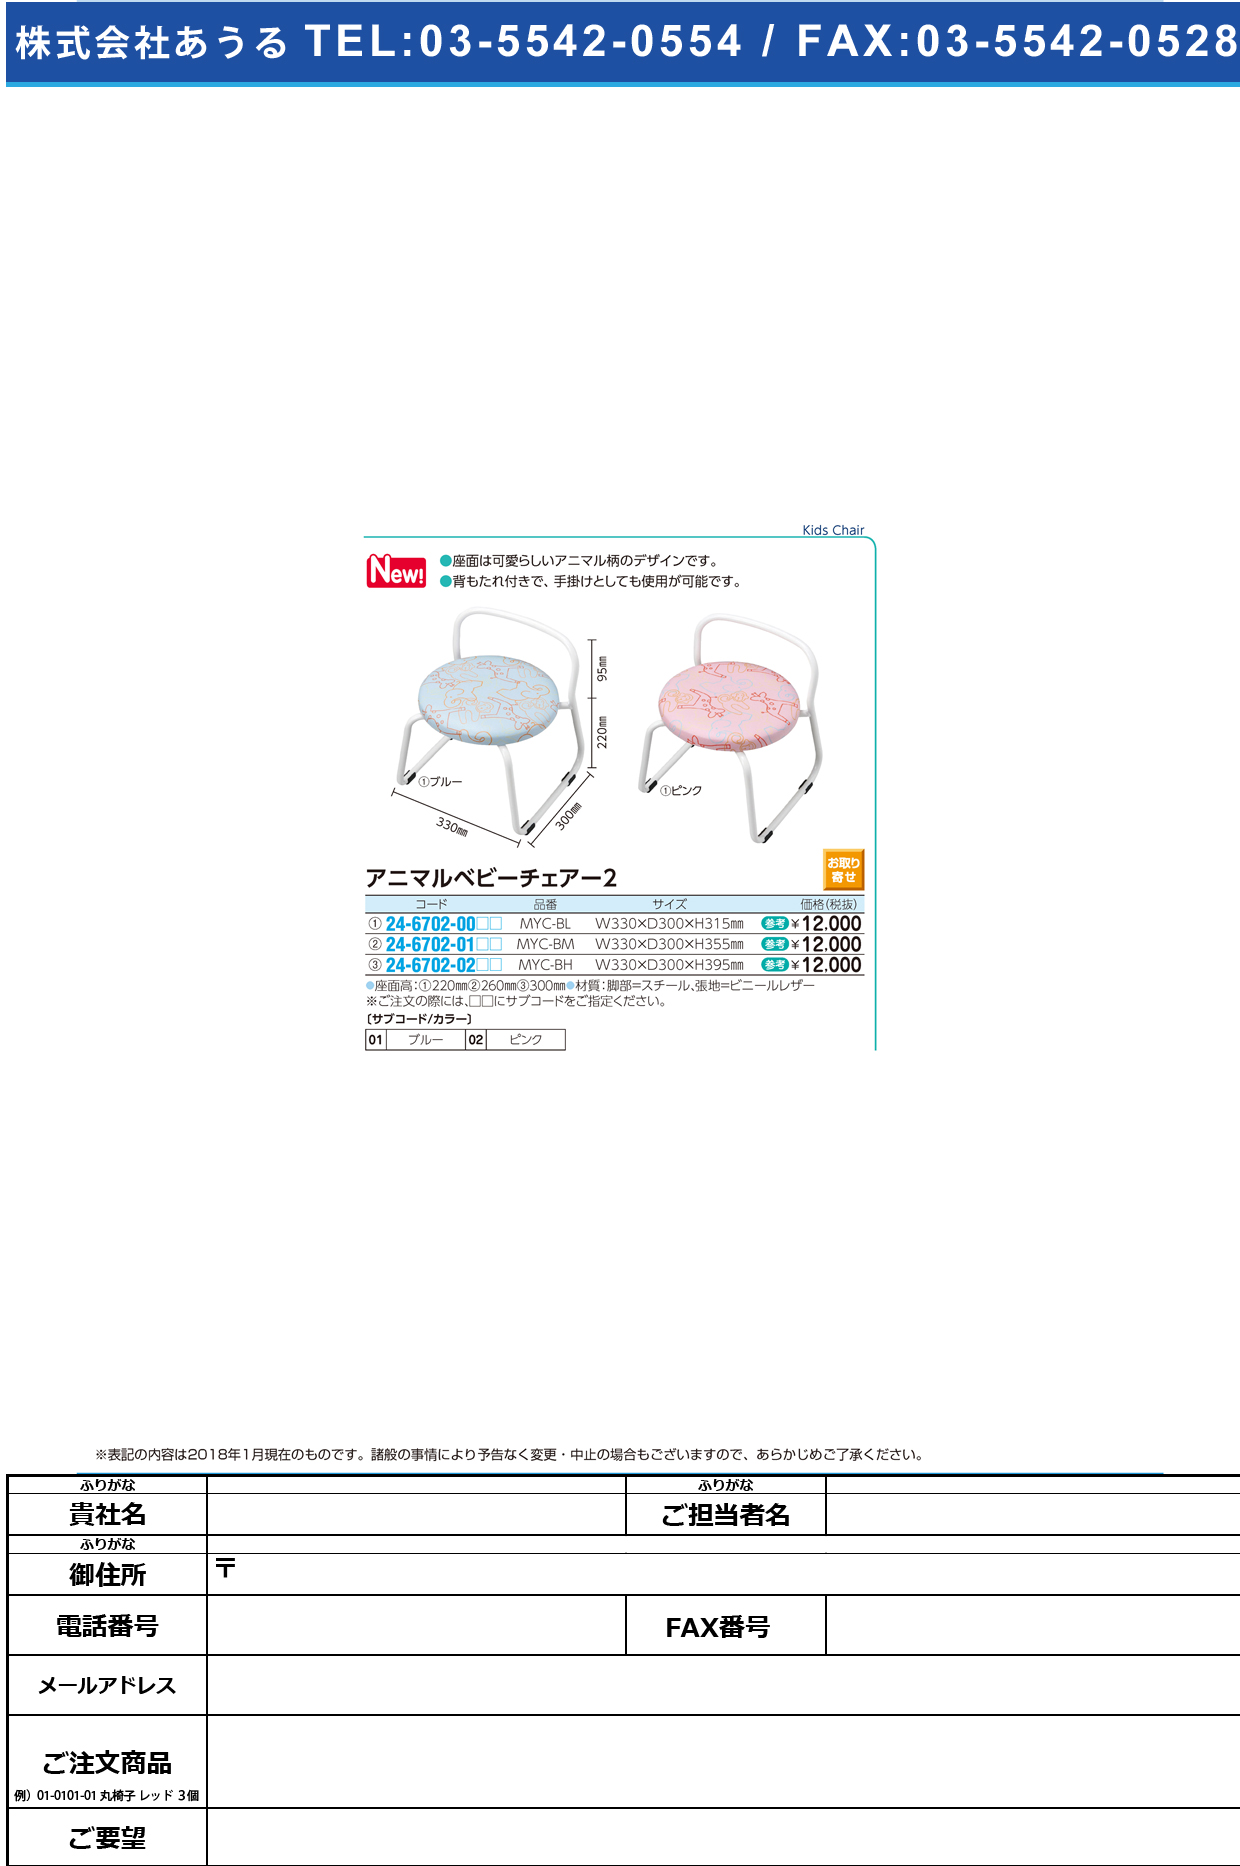 (24-6702-01)アニマルベビーチェア MYC-BM(33X30X35.5CM) ｱﾆﾏﾙﾍﾞﾋﾞｰﾁｪｱ2 ブルー【1台単位】【2018年カタログ商品】